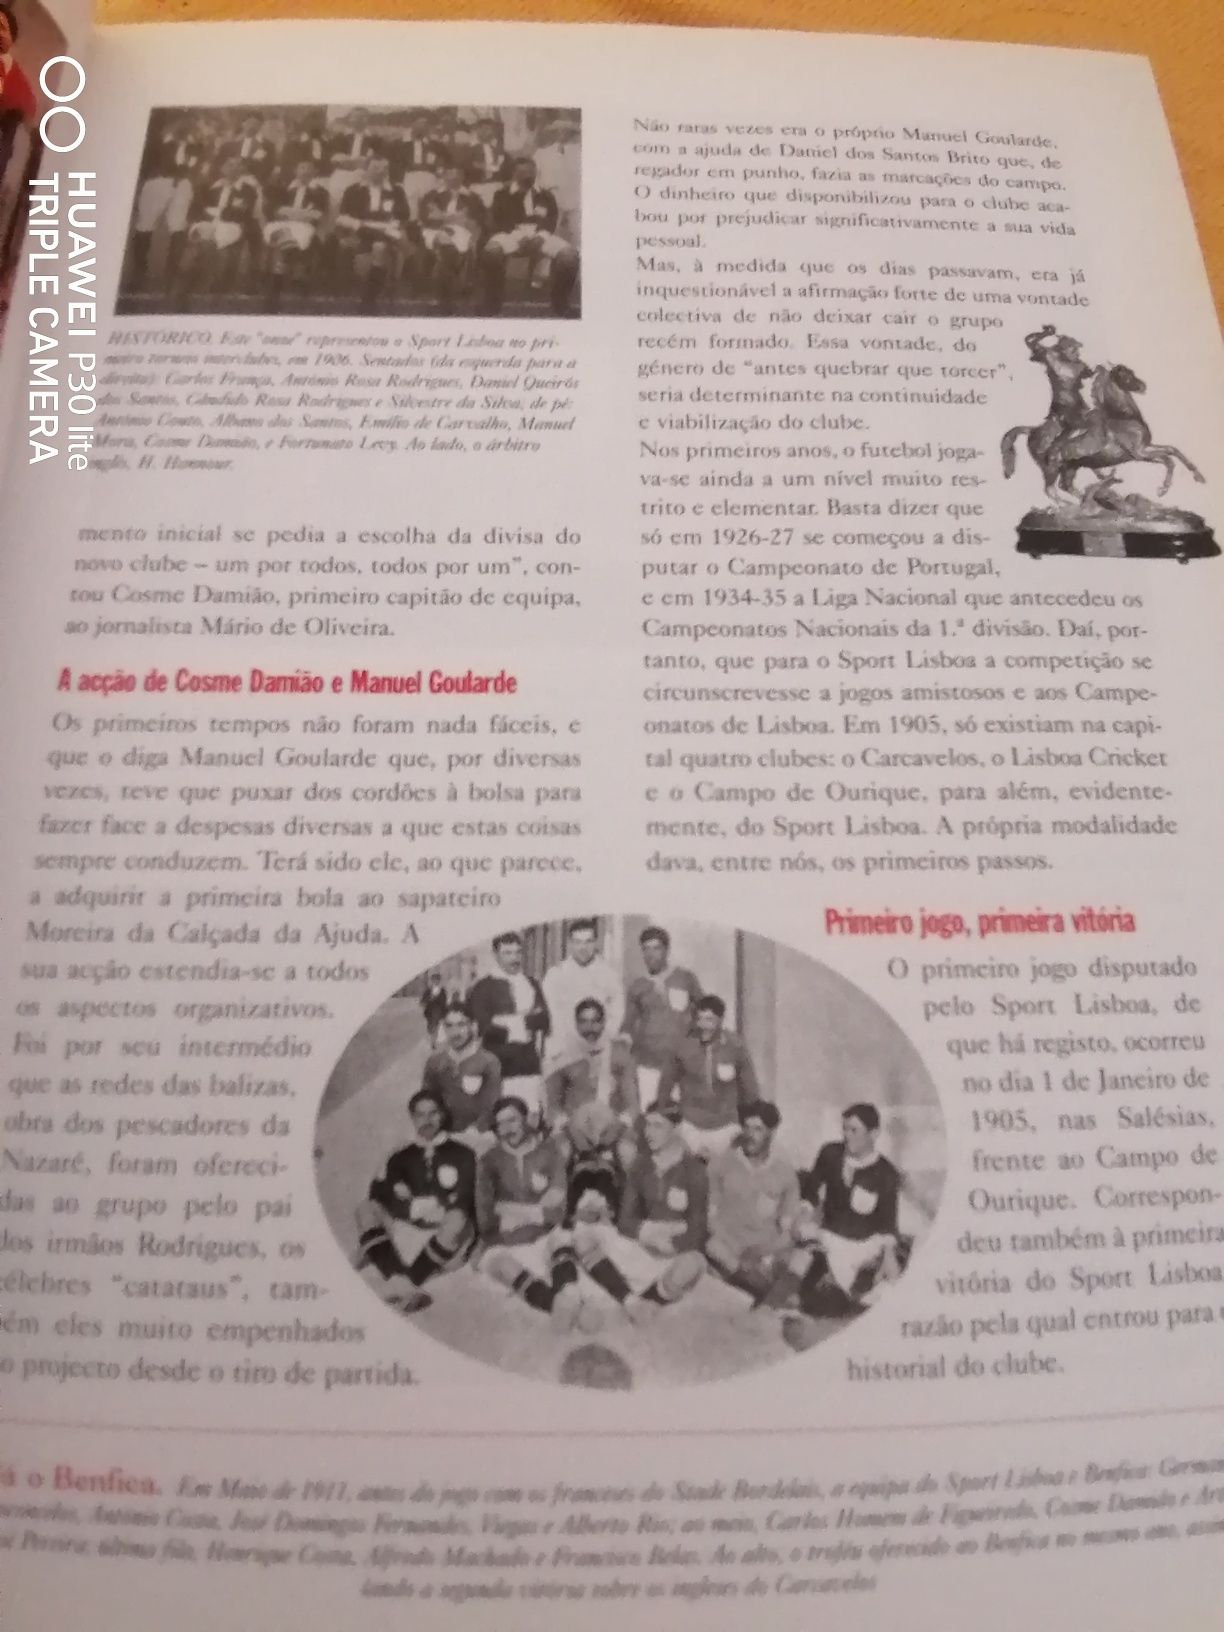 Livro Benfica, "A historia os triunfos e as imagens de todos os tempo